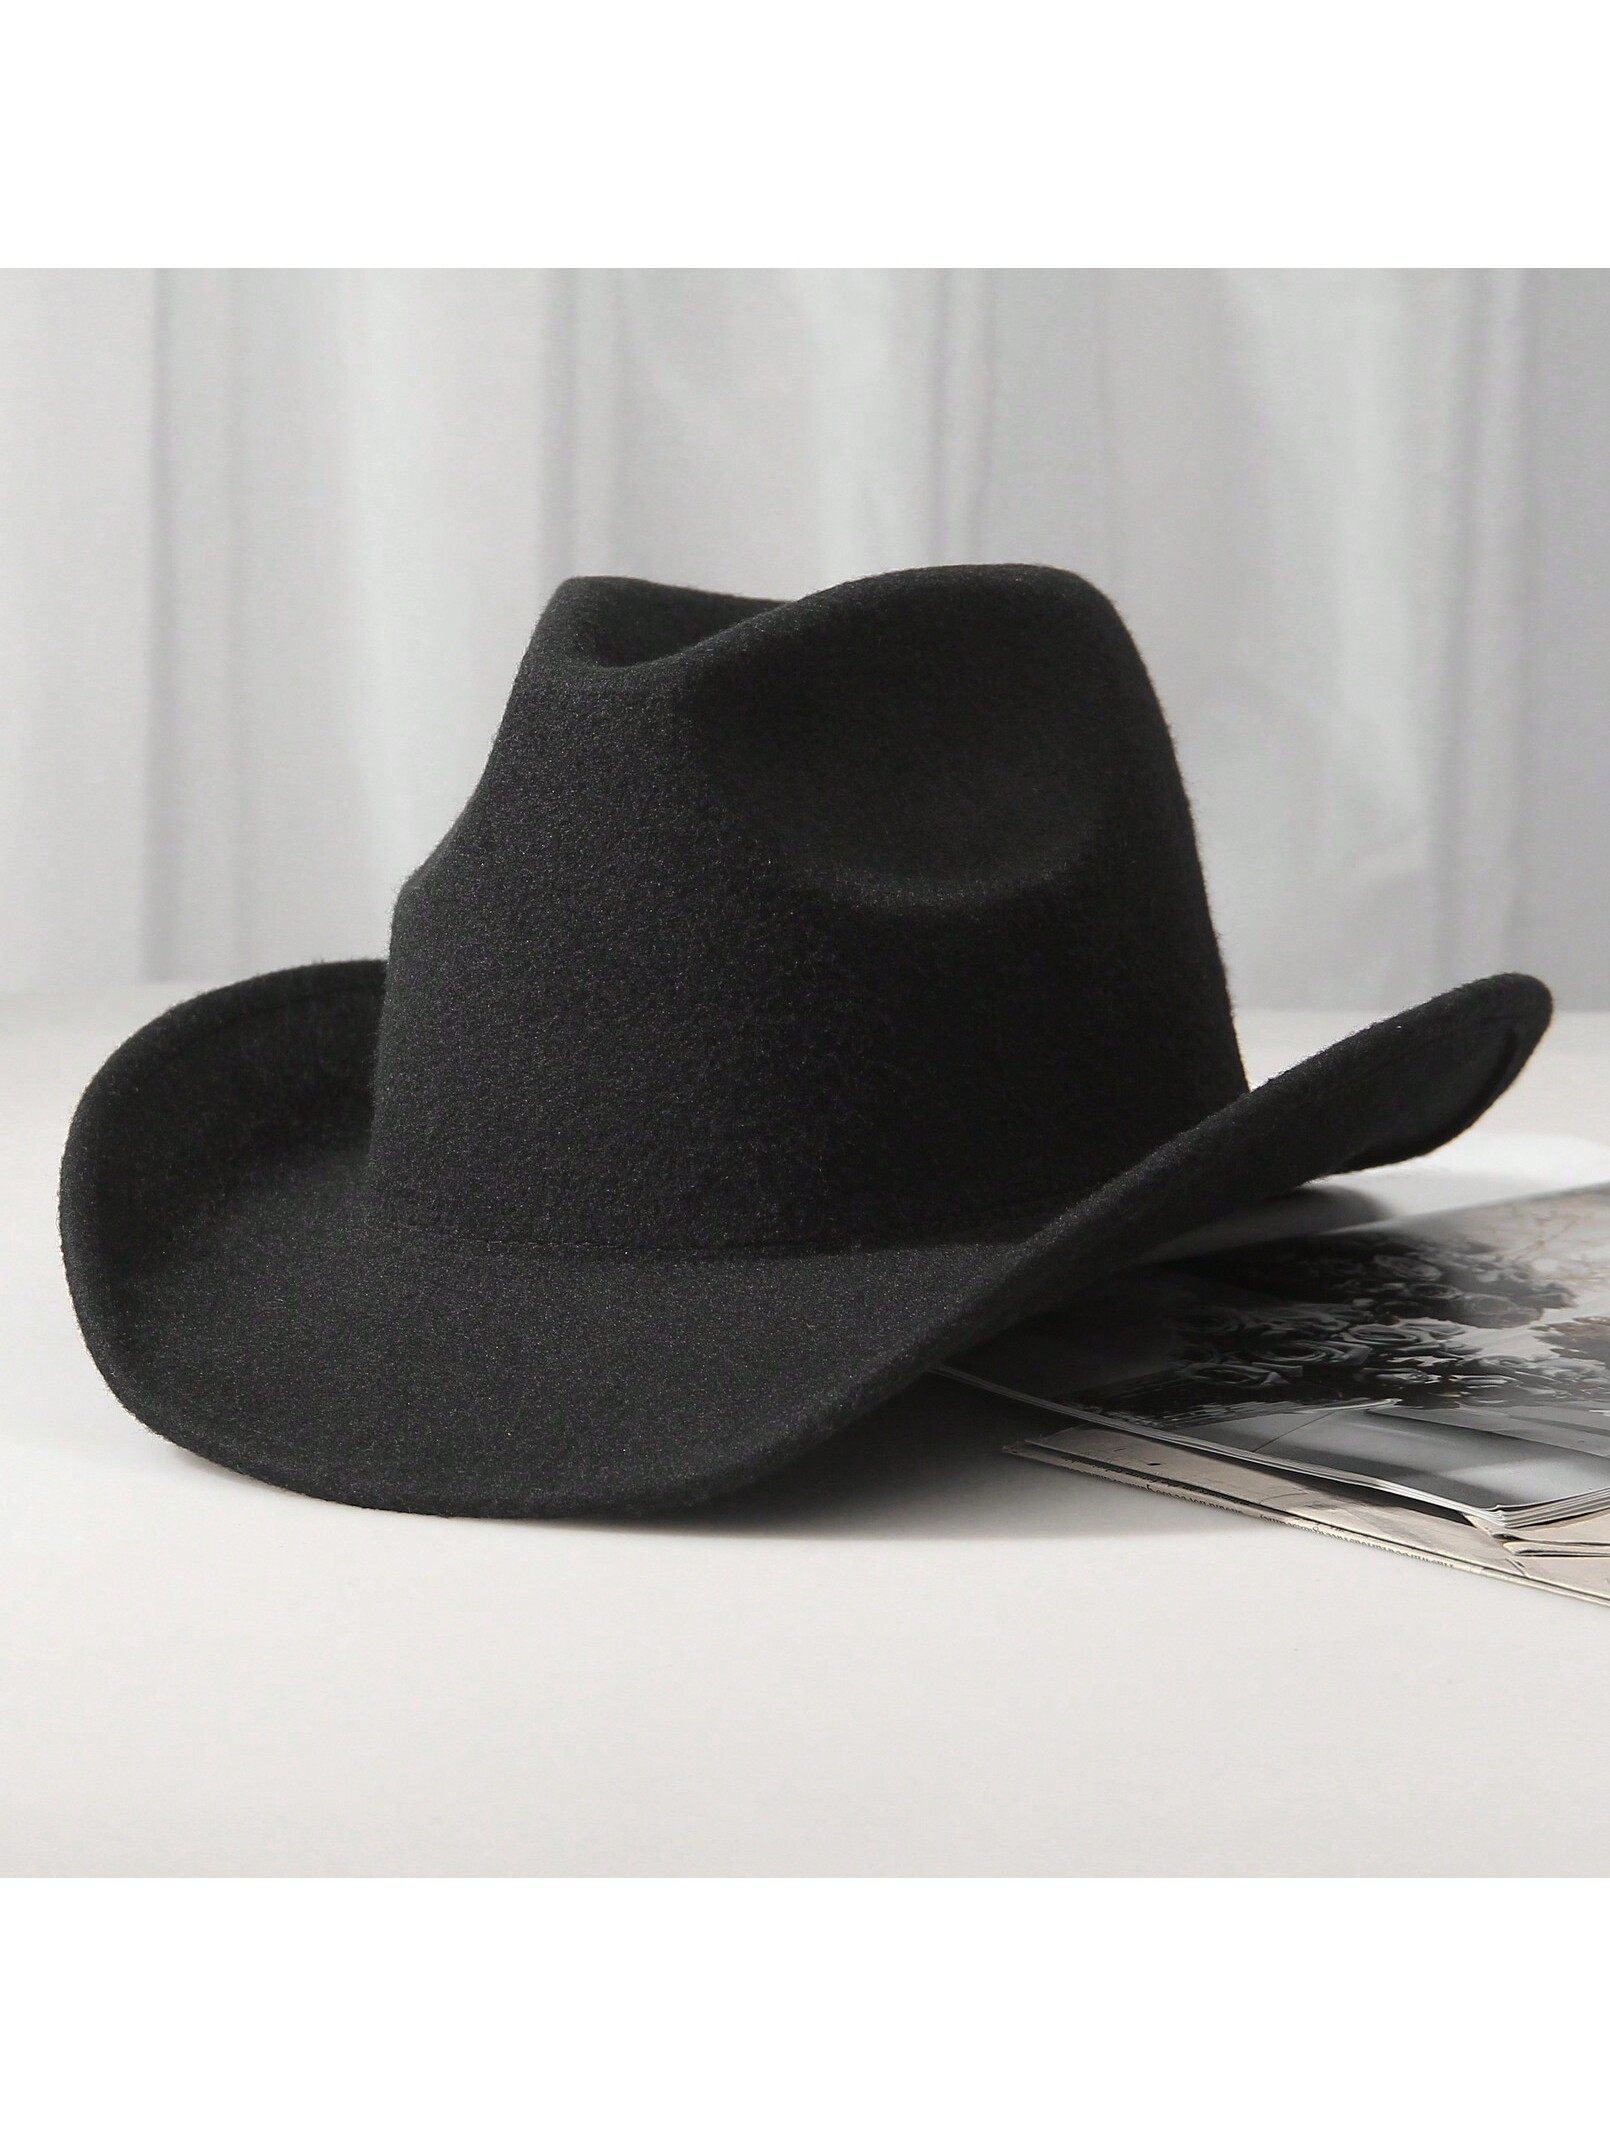 шляпа гламурная ковбойская розовая ковбой набор 3 шт 1шт унисекс шерстяная ковбойская шляпа-ковбойская шляпа в западном стиле черная ковбойская шляпа, черный